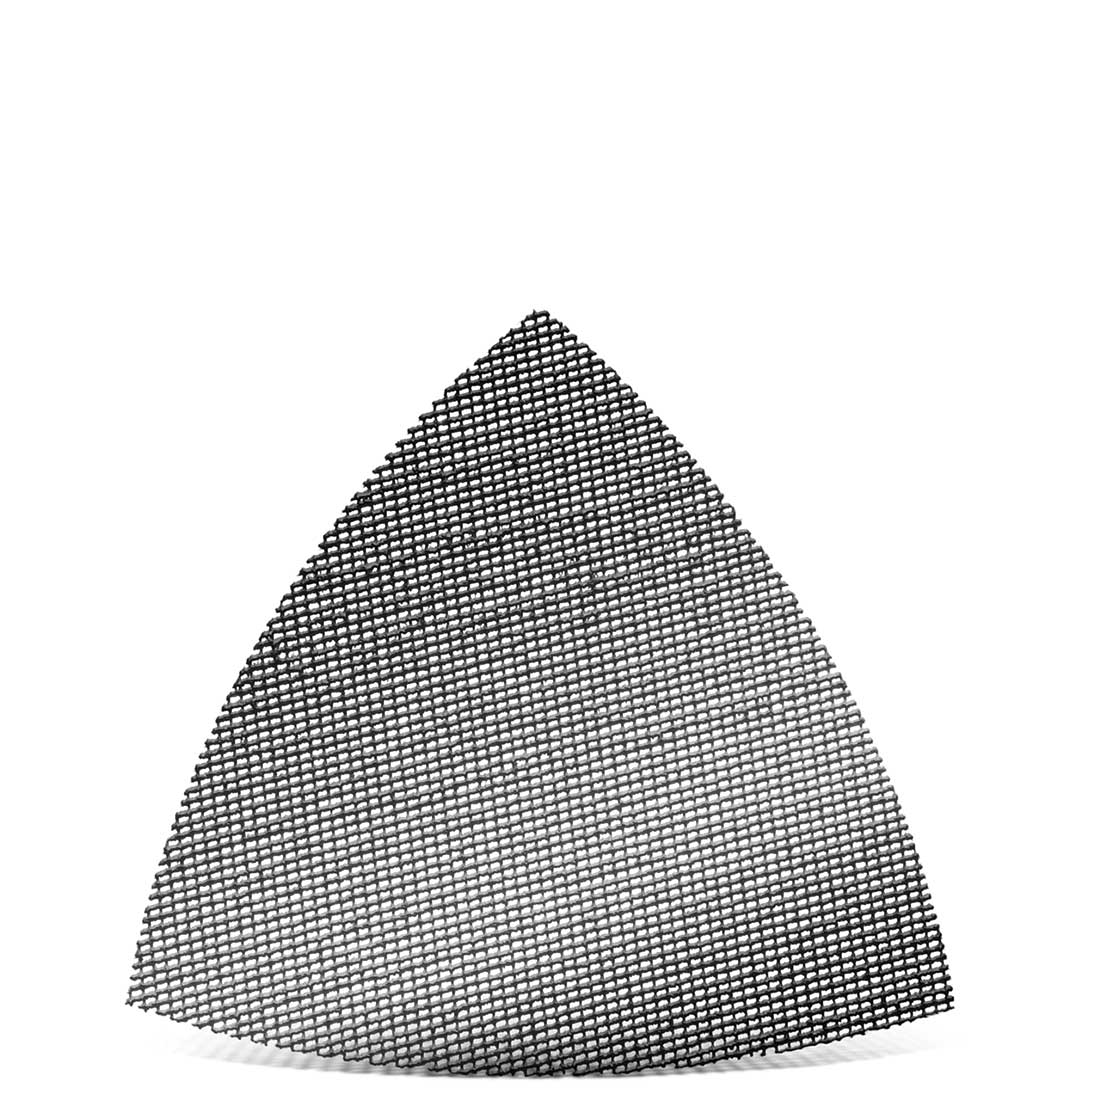 MENZER Klett-Schleifgitter für Deltaschleifer, K60–180, 82 mm / Gitter / Siliciumcarbid